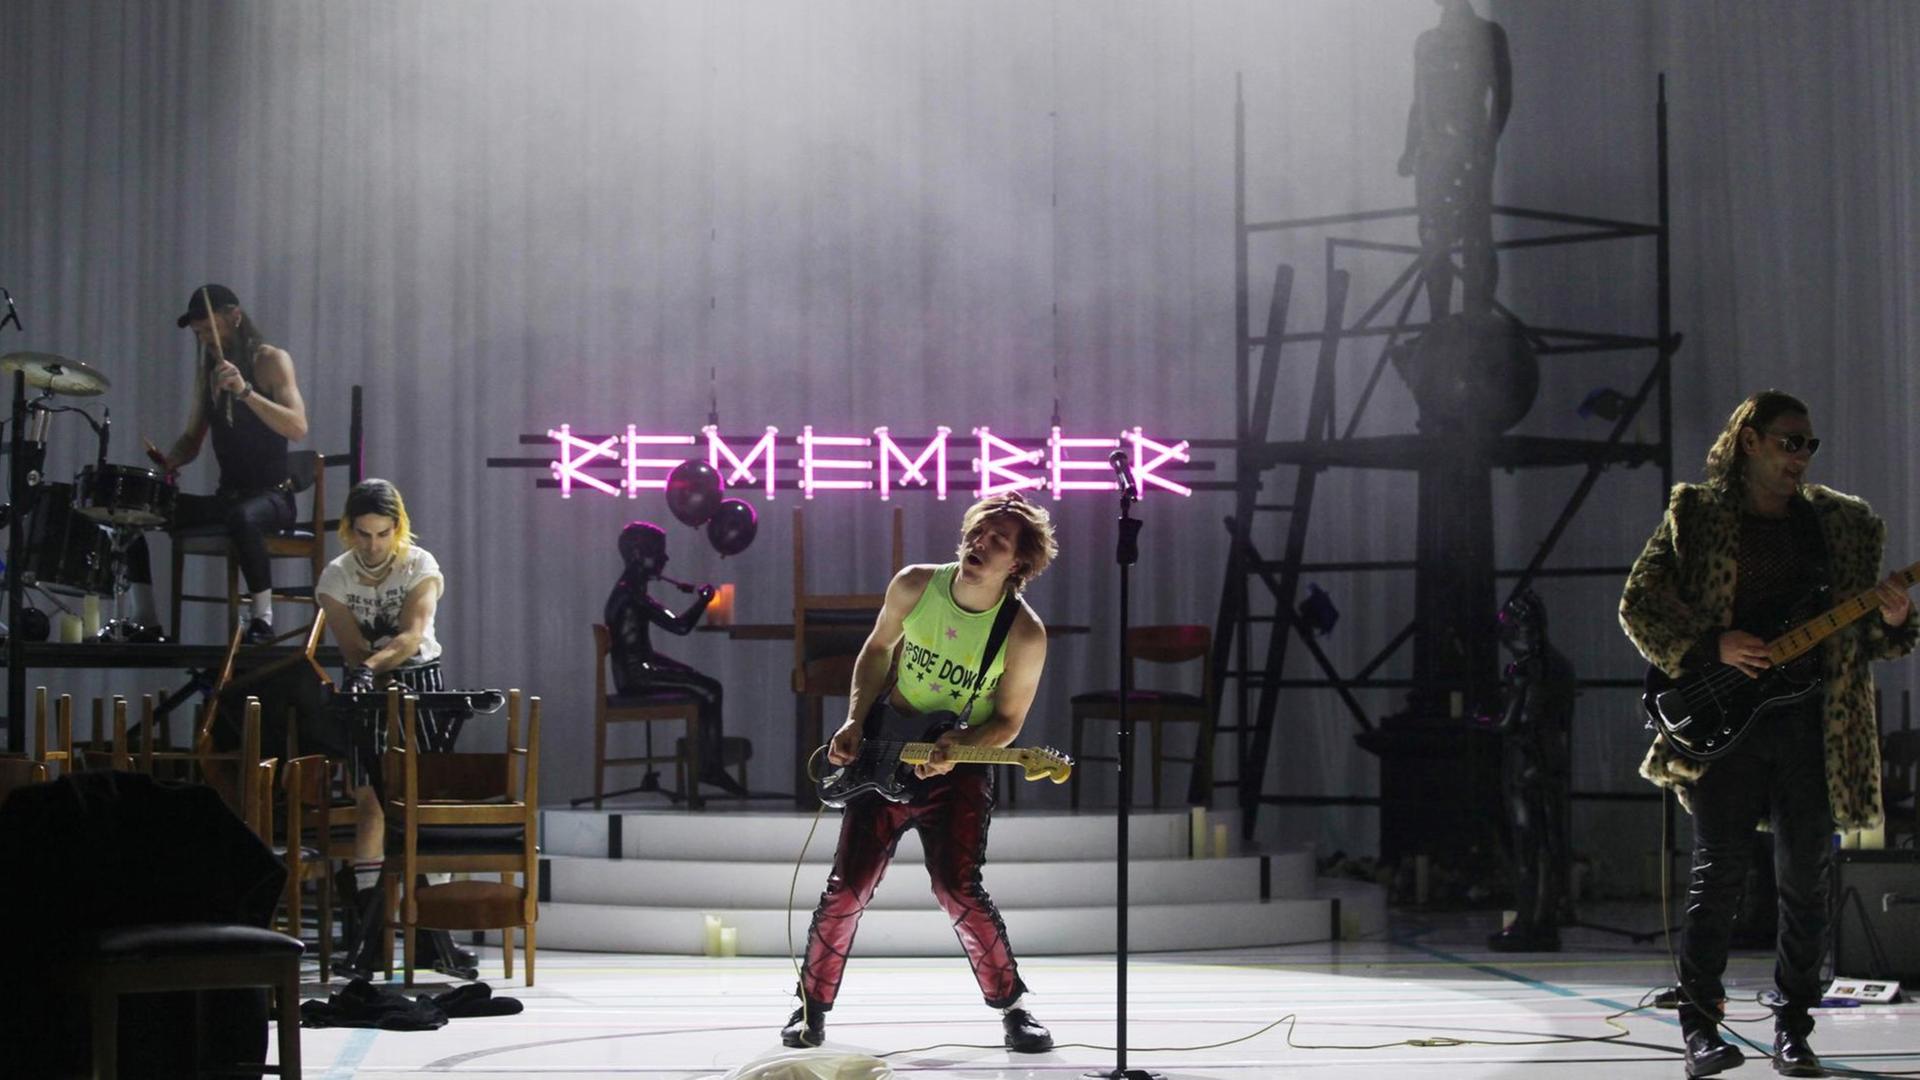 Szenenfoto aus "In my Room": Eine Band spielt auf einer Bühne. Im Vordergrund Jonas Dassler in einem neongrünen bauchfreien Muskel-Shirt mit dem Aufdruck "Upside Down". Er spielt Gitarre.